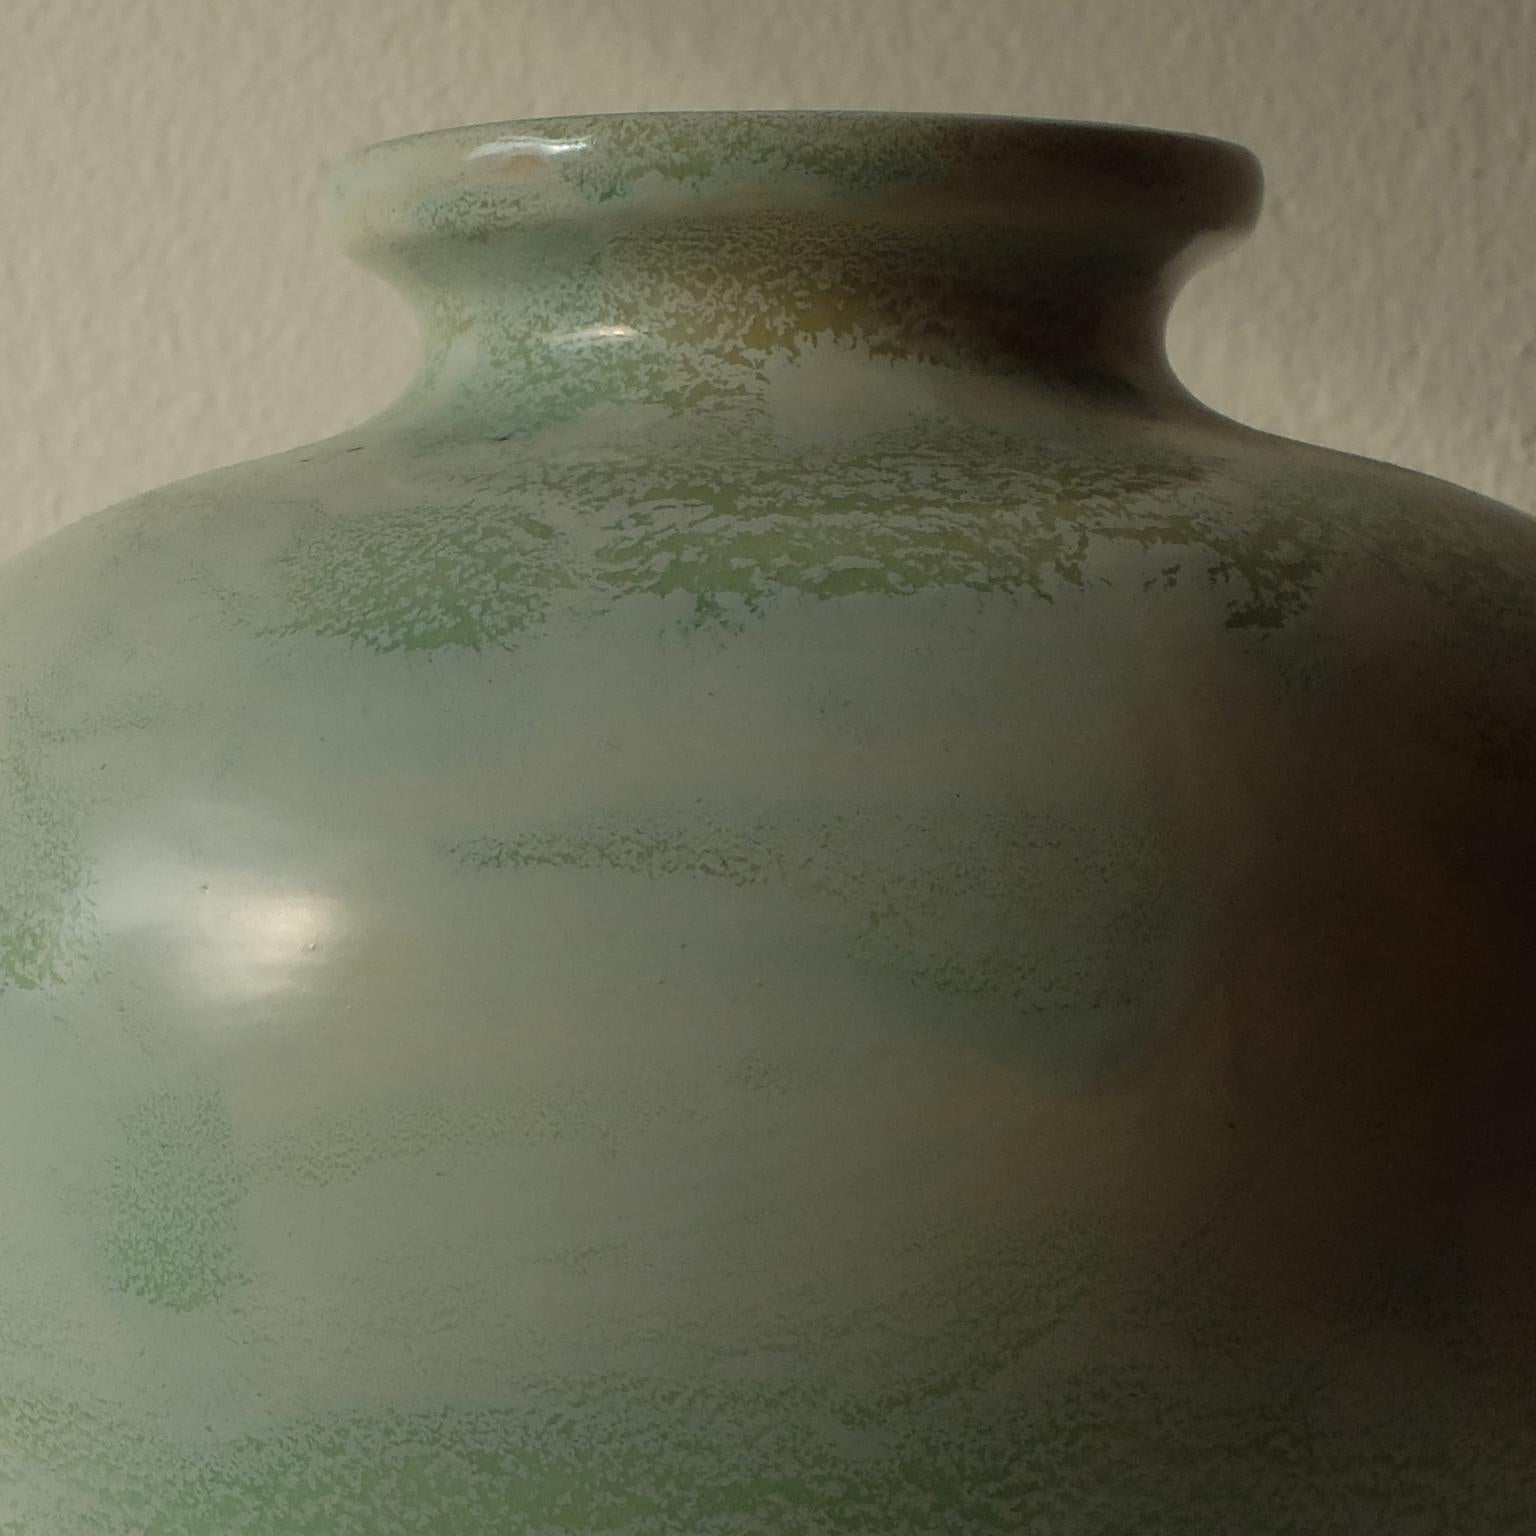 Guido Andlovitz Lavenia, élégant vase en céramique émaillée, années 1930.
Il est né à Trieste d'Edoardo, chimiste à Grado, et de Carmela Pasqualis.
Pendant la Première Guerre mondiale, sa famille a été déplacée à Florence où il a fréquenté